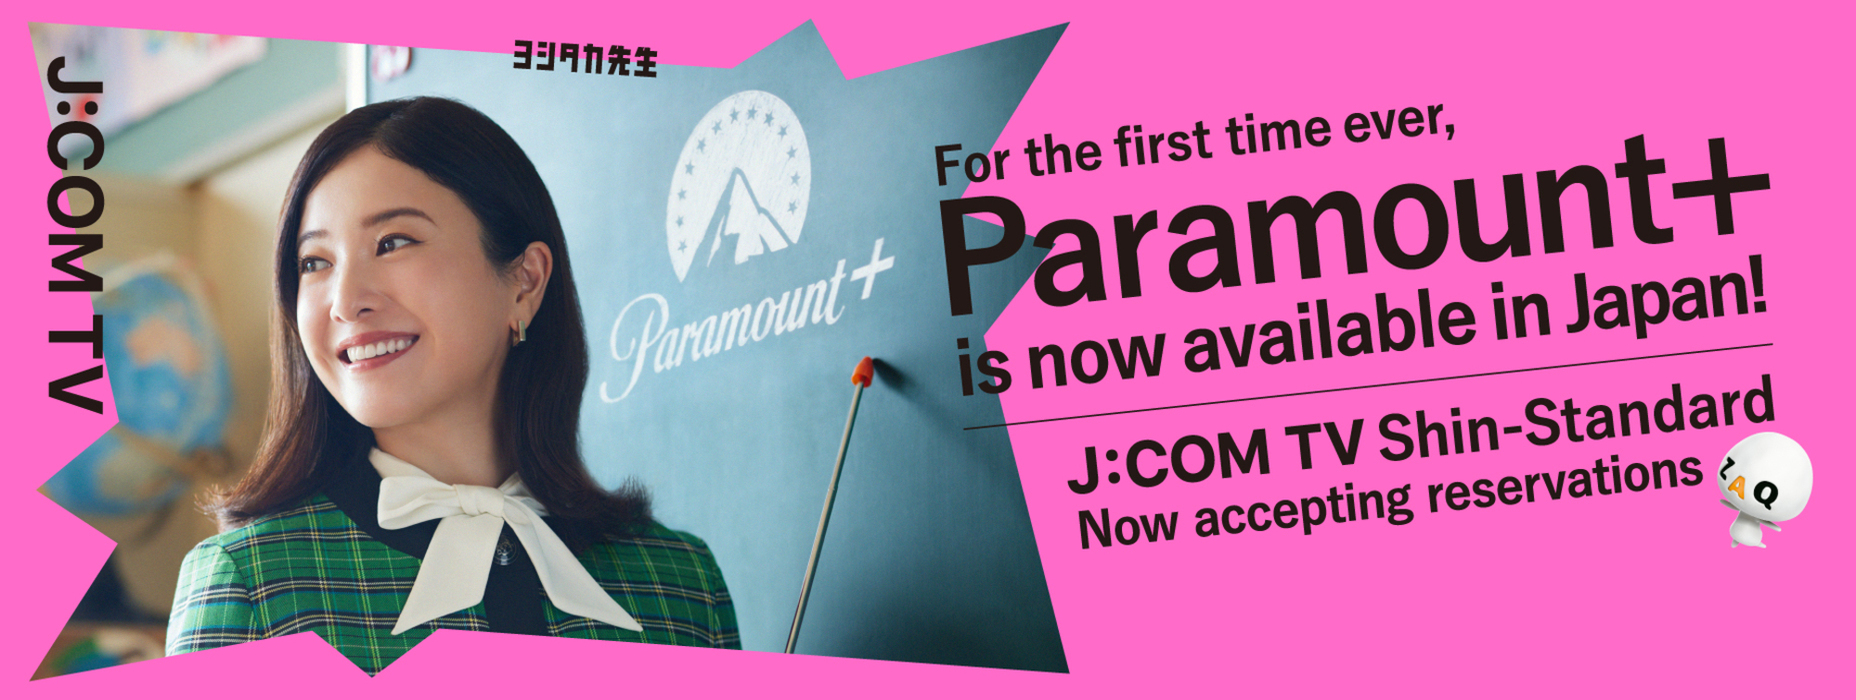 J:COM × Paramount+ J:COM TV Shin Standard aparece! Encontros com programas inesperados e encontros com programas que eu queria ver